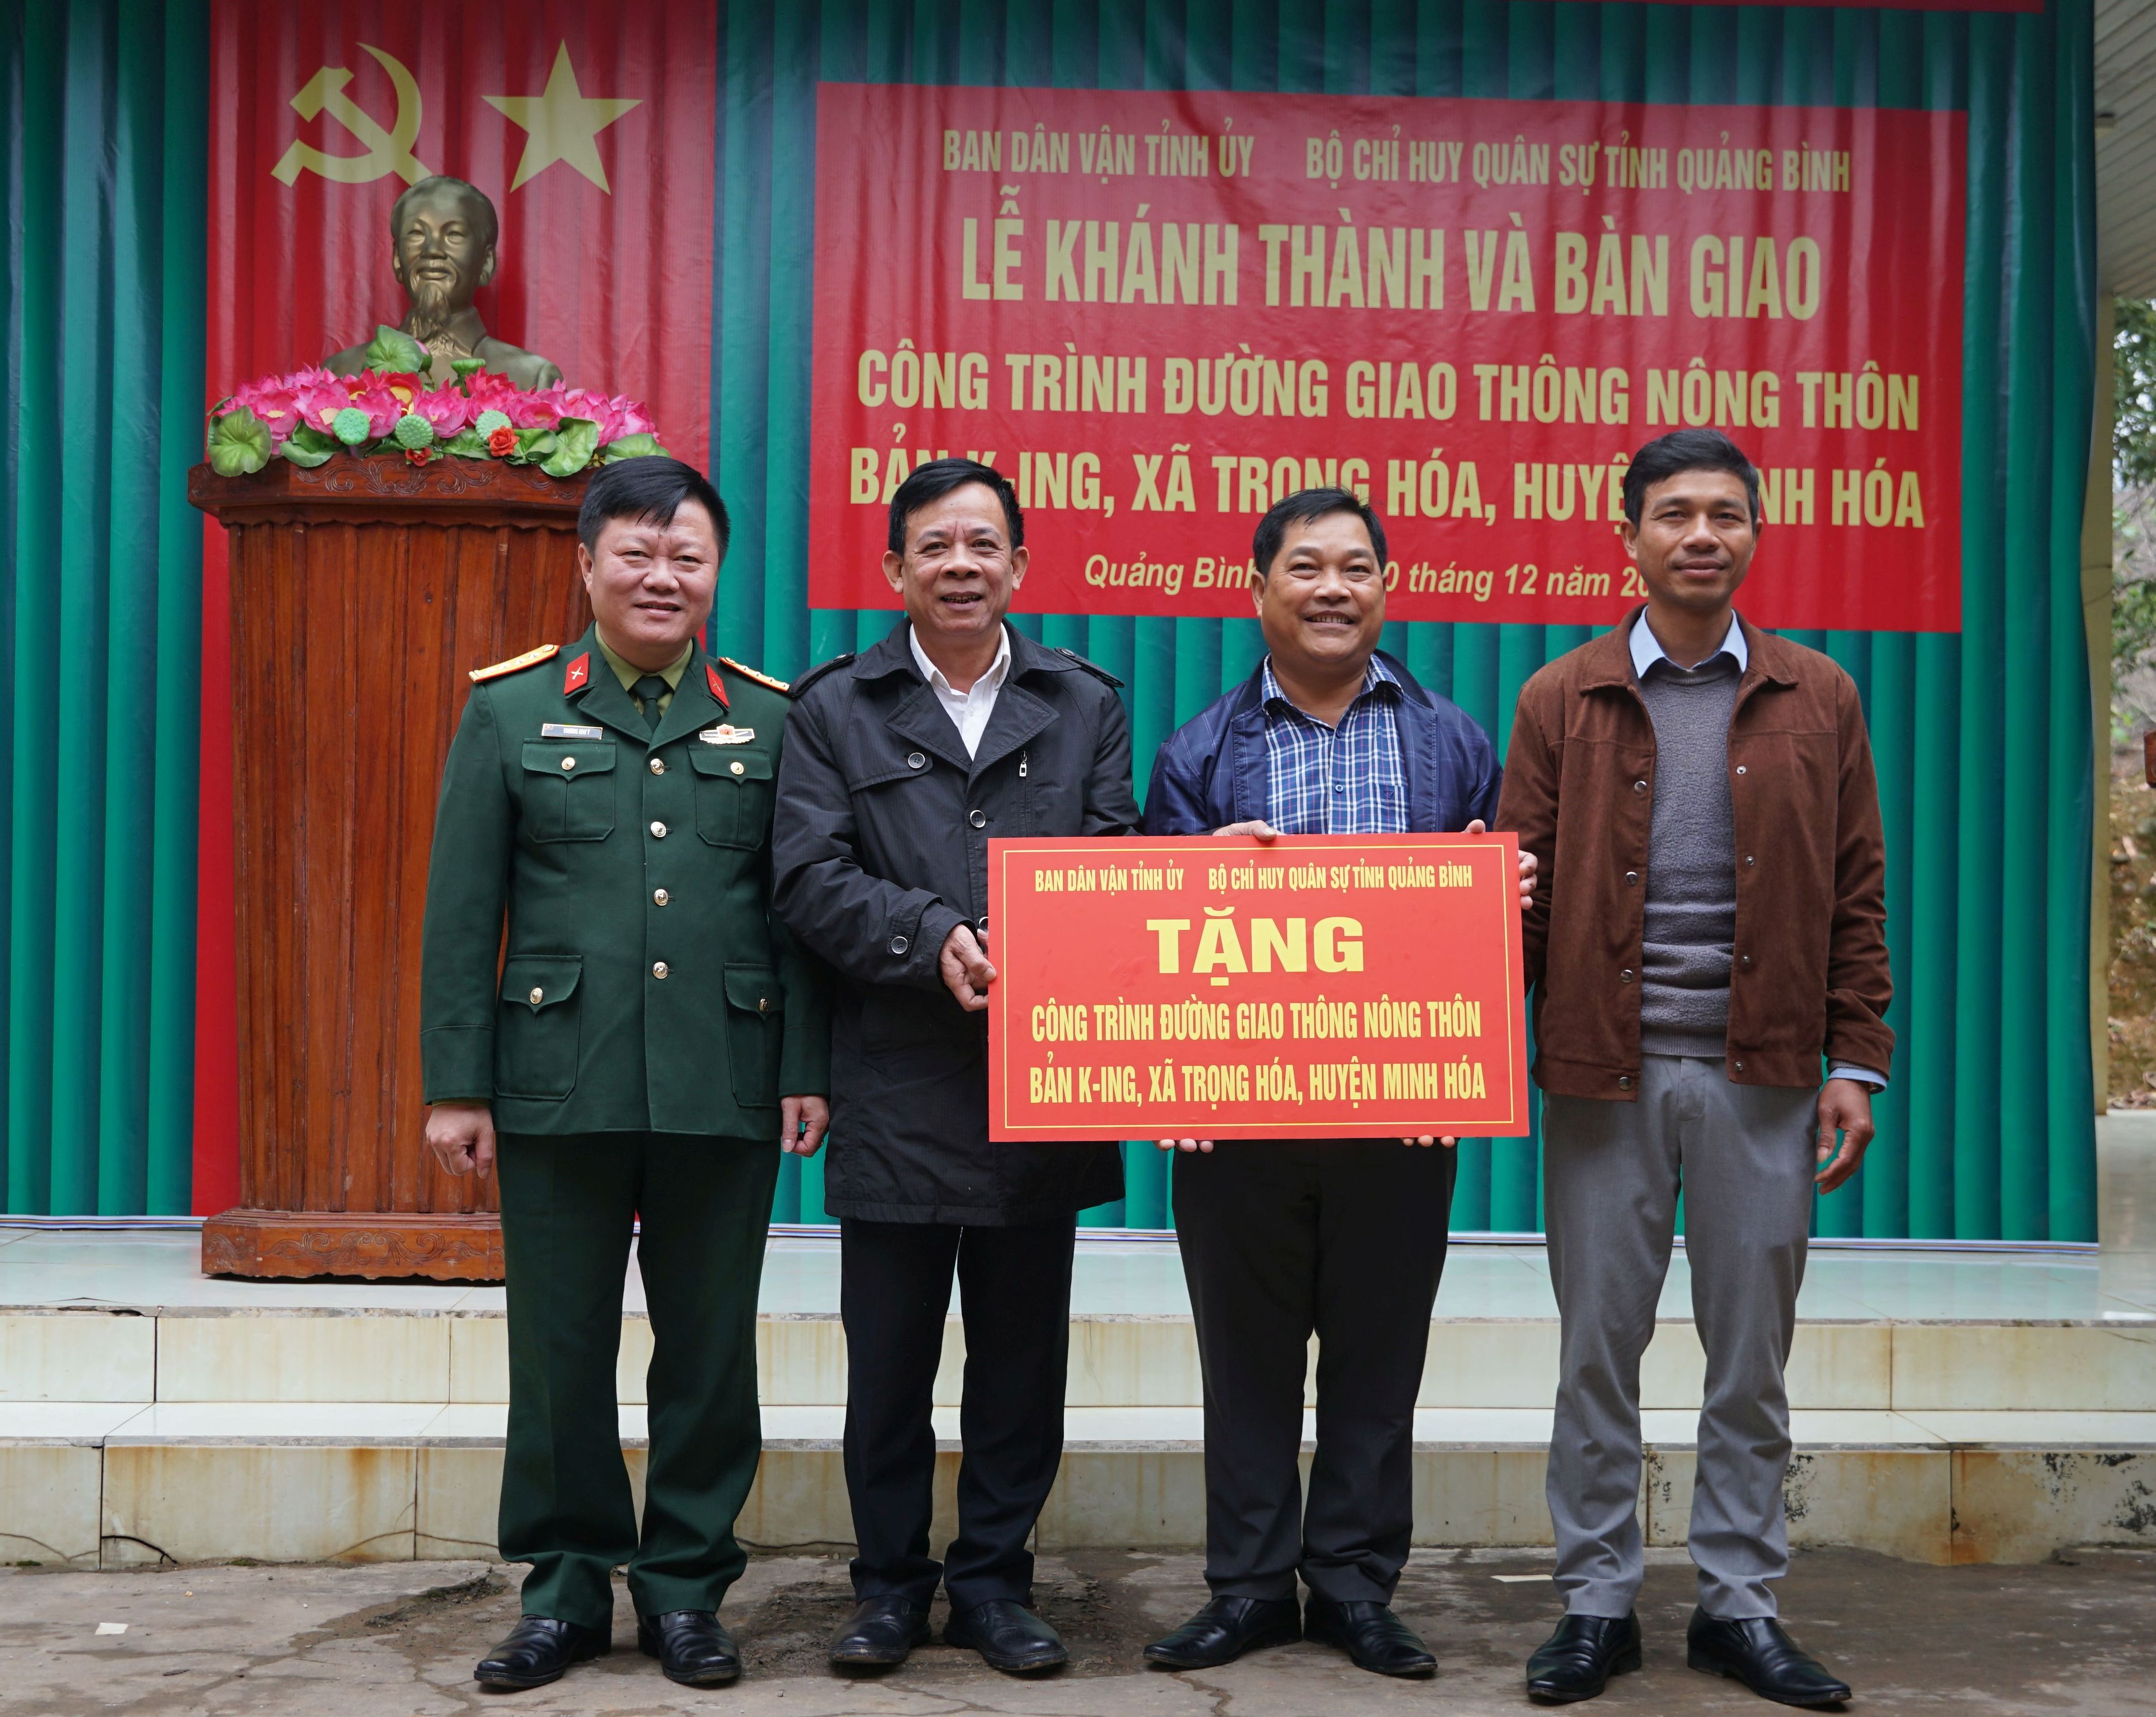 Ban Dân vận Tỉnh ủy và Bộ CHQS tỉnh bàn giao công trình NTM cho chính quyền địa phương xã Trọng Hóa.